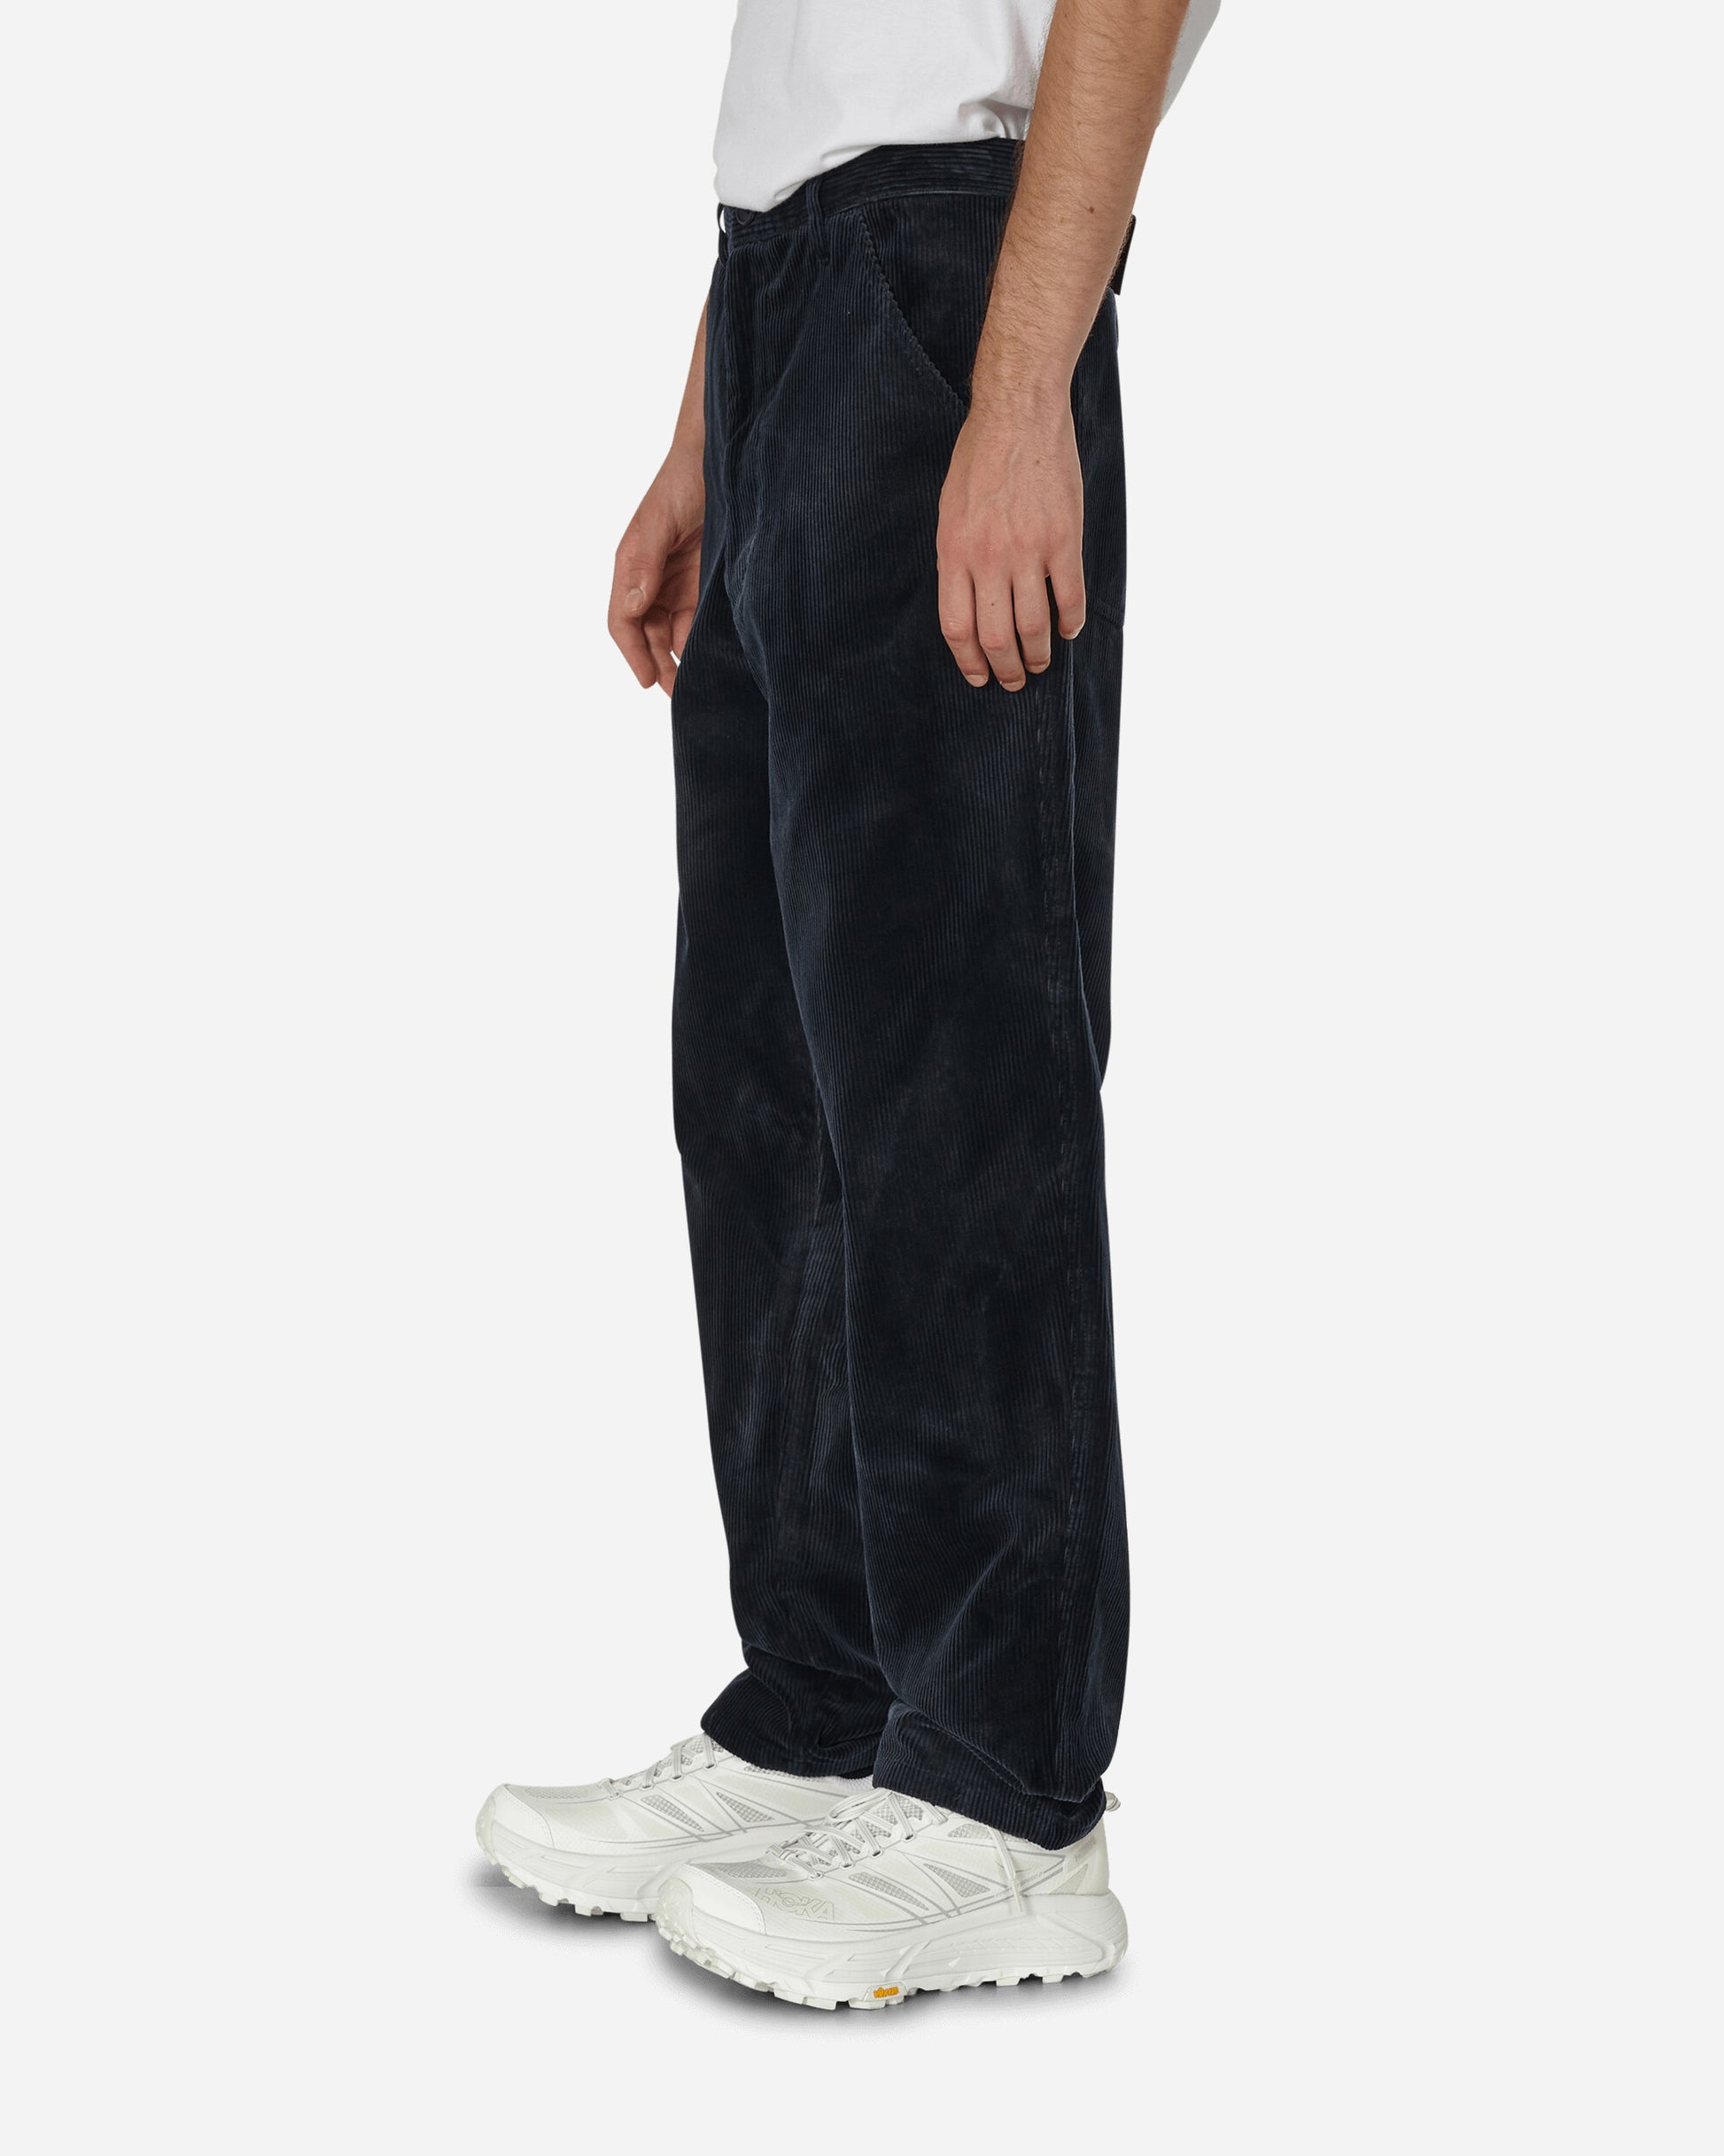 Comme Des Garçons Shirt Mens Pants Woven Navy Pants Trousers FL-P007-W23  1